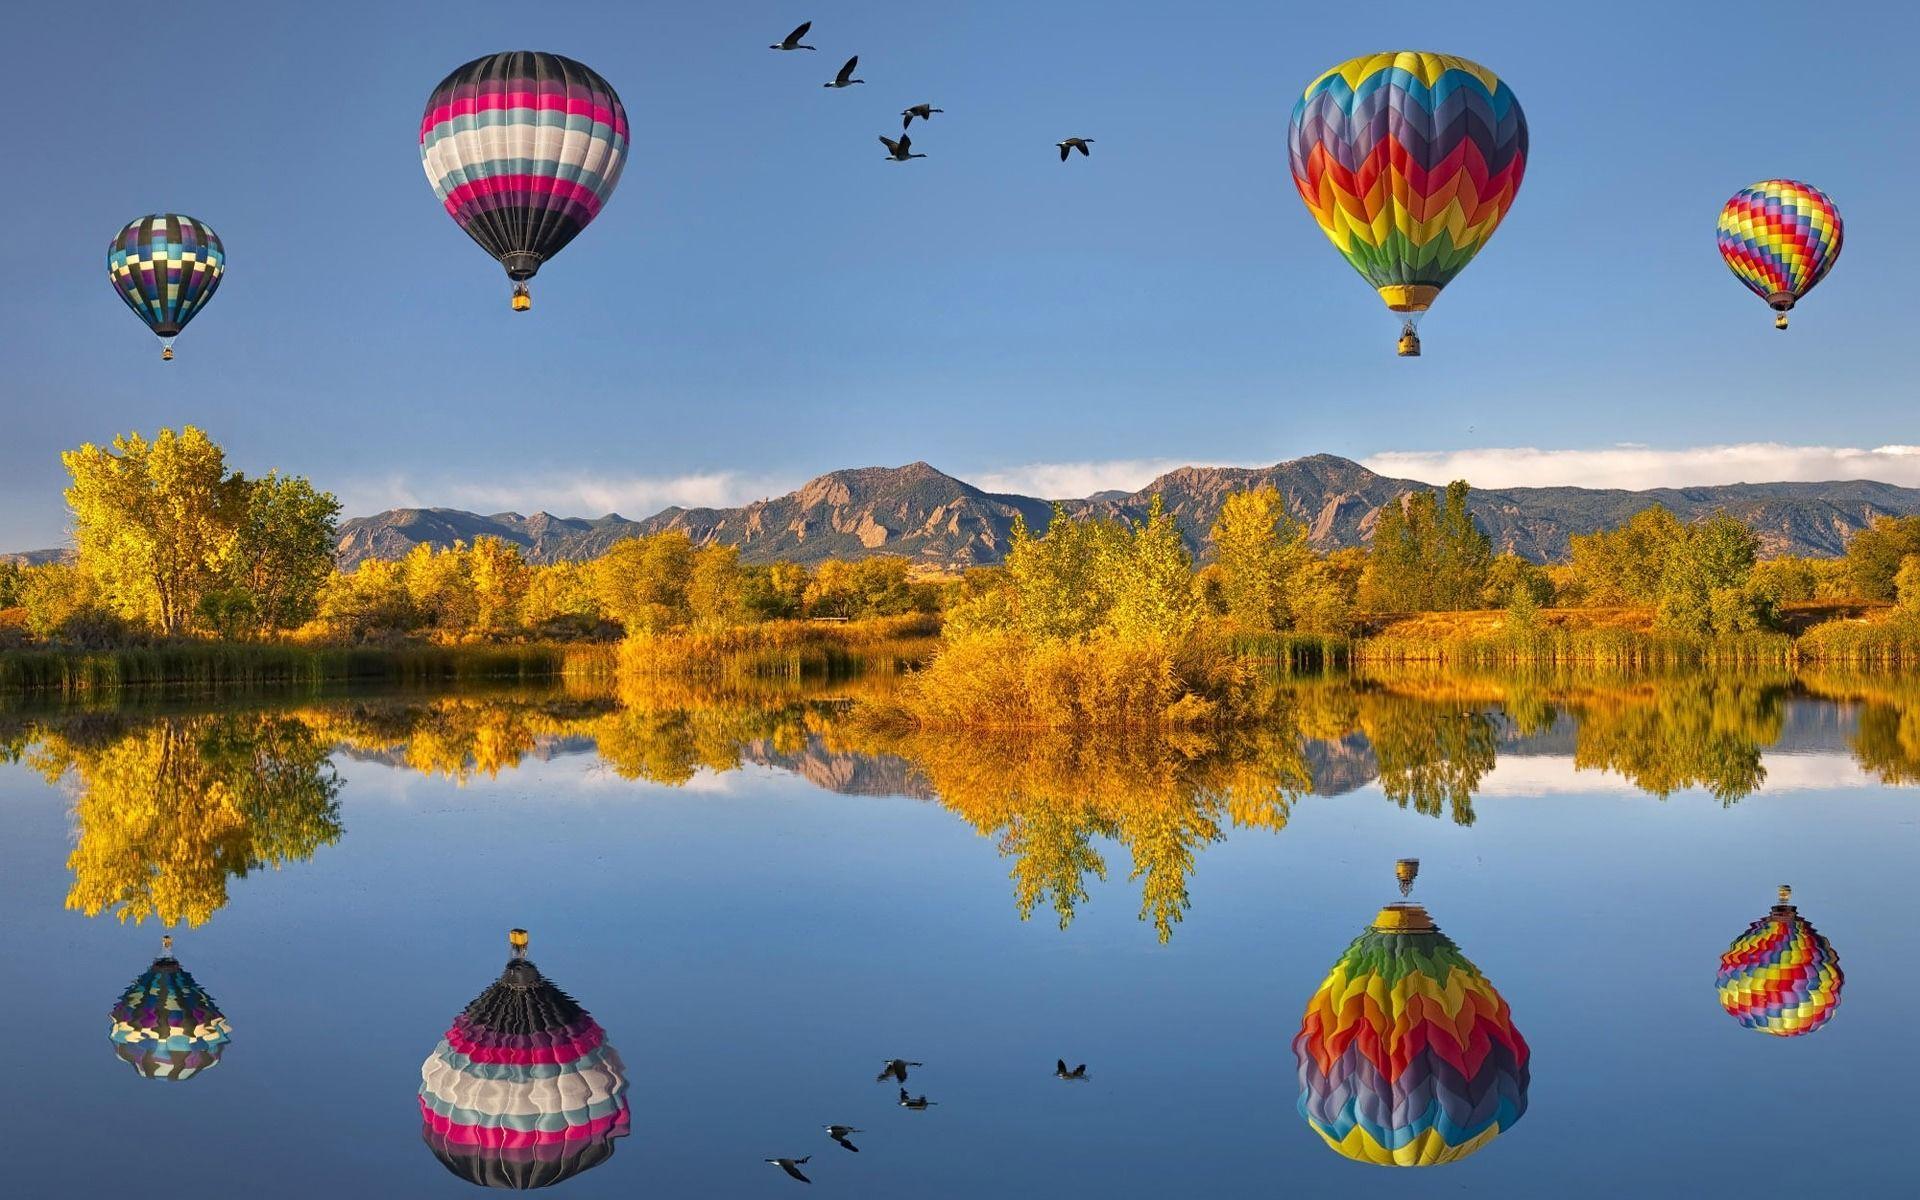 HD Hot Air Balloon Wallpaper and Photo. HD Photography Wallpaper